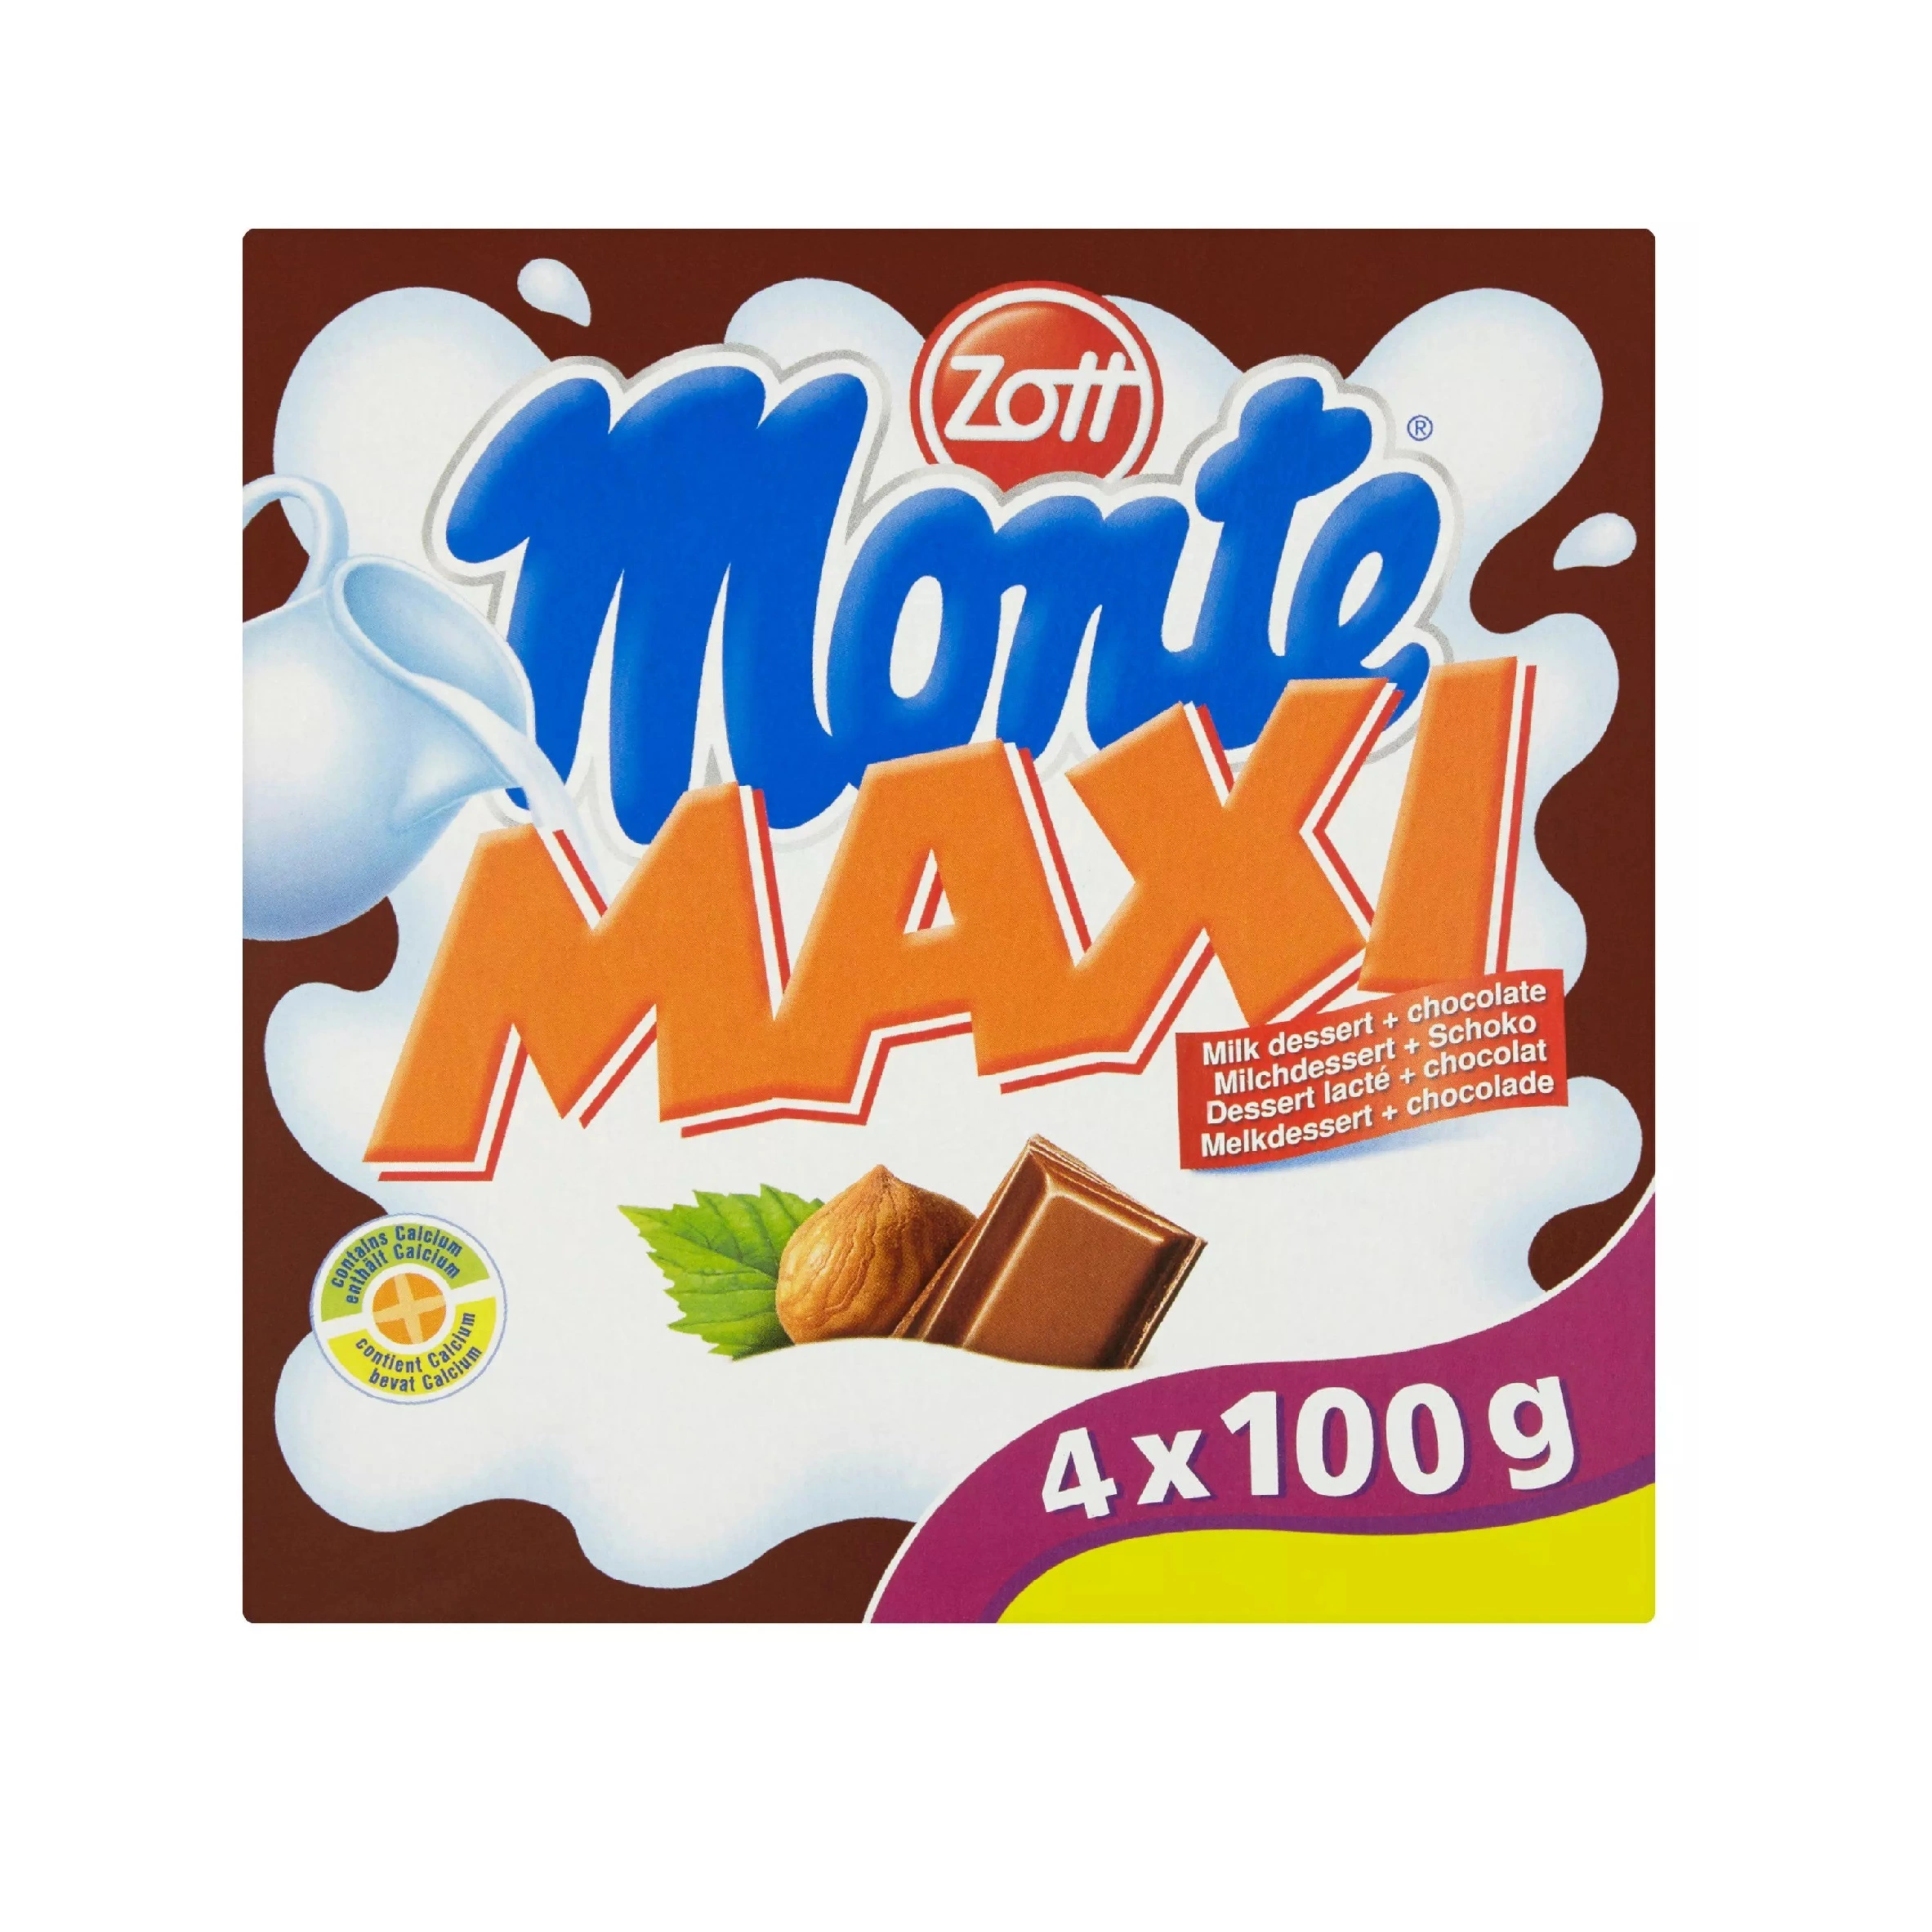 Zott Monte Maxi Milk Dessert and Chocolate 4x100g